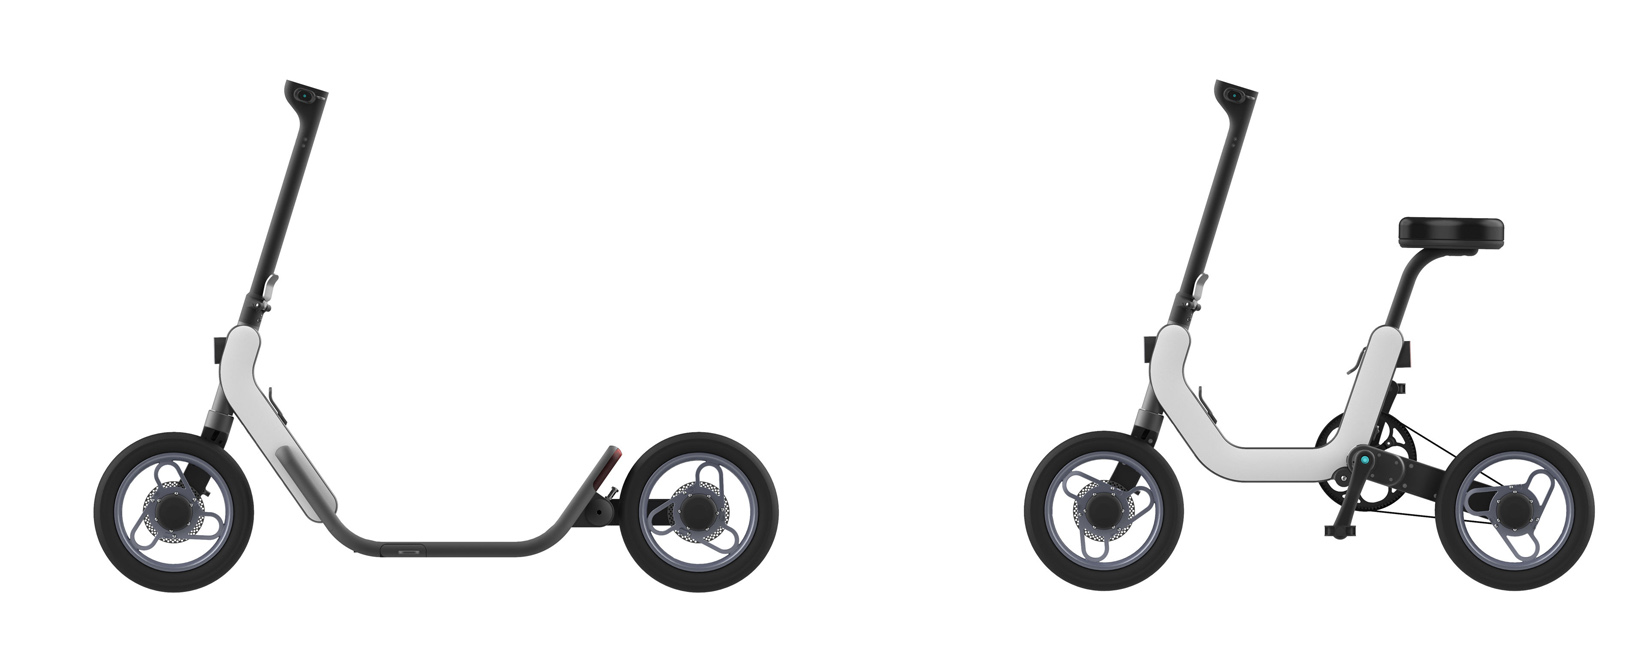 Gmigo One / Gmigo Modular Smart E-bike